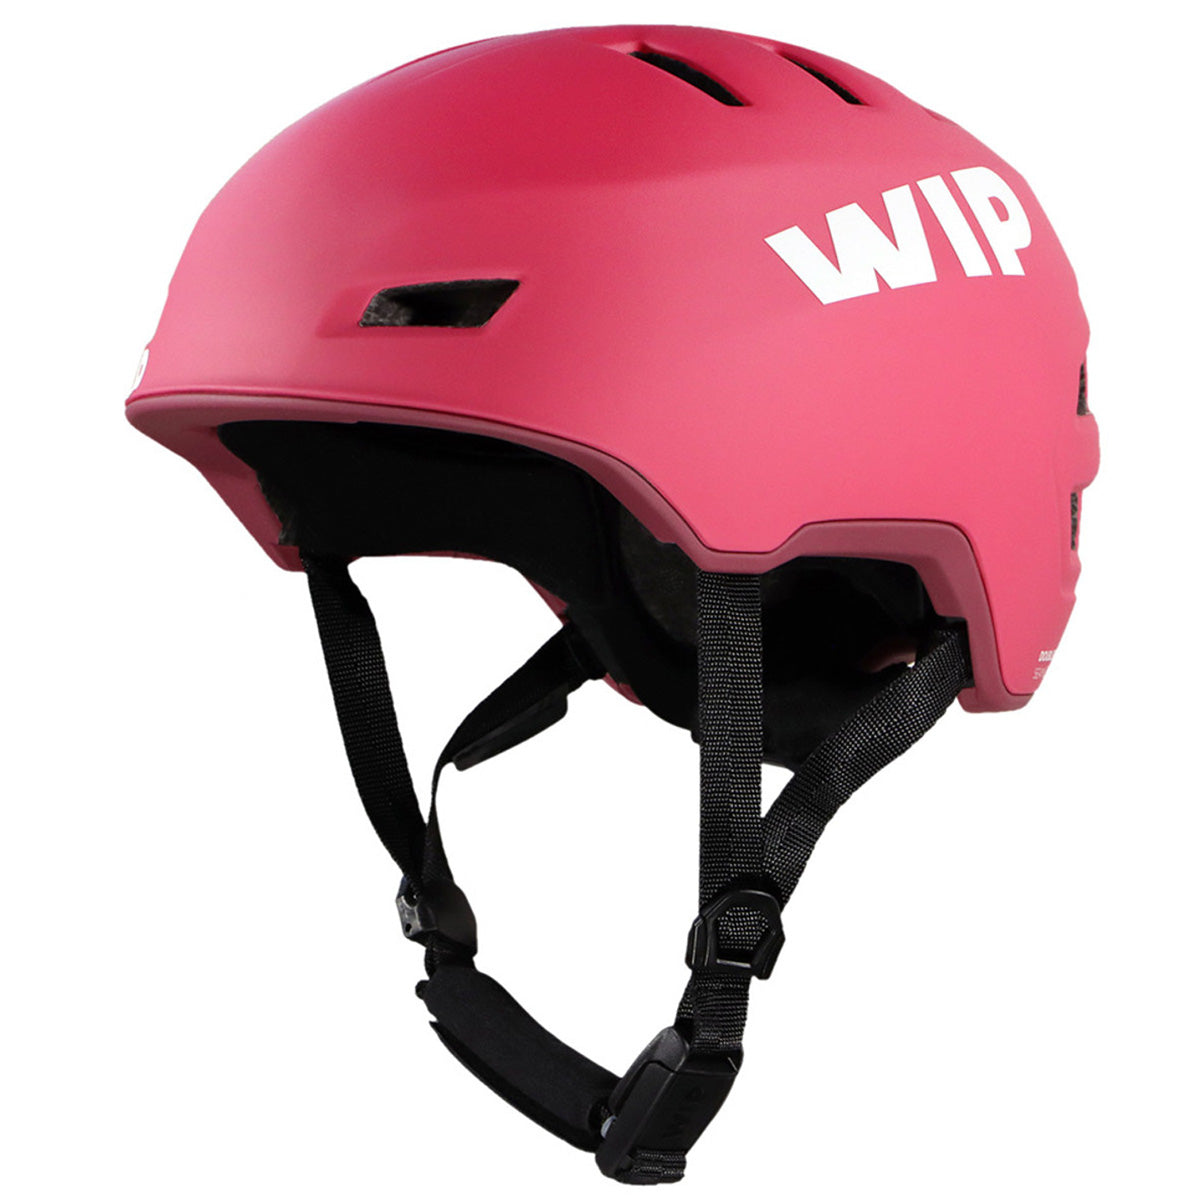 Forward Wip Pro Wip 2.0 Safety Helmet